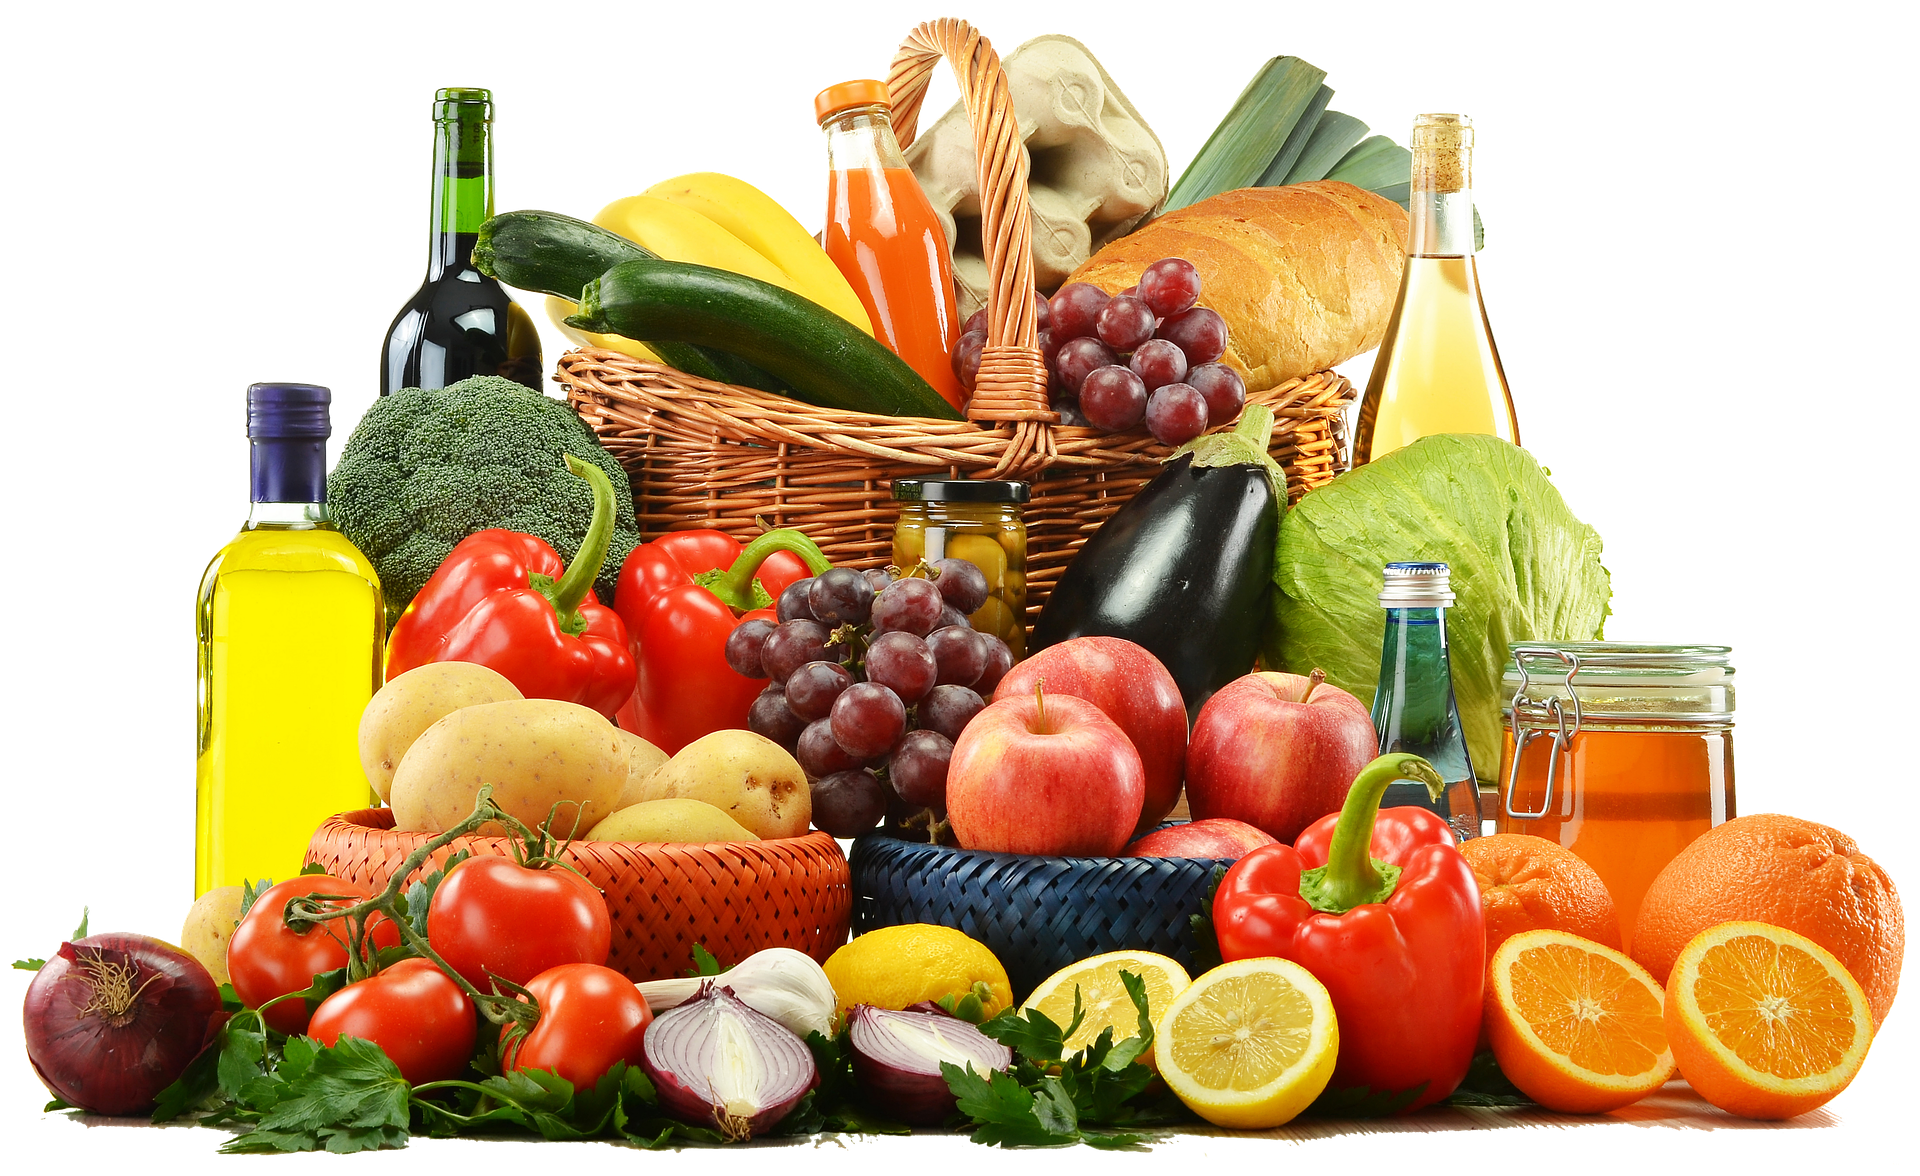 Produits alimentaires d'origine végétale soumis aux LMR européennes